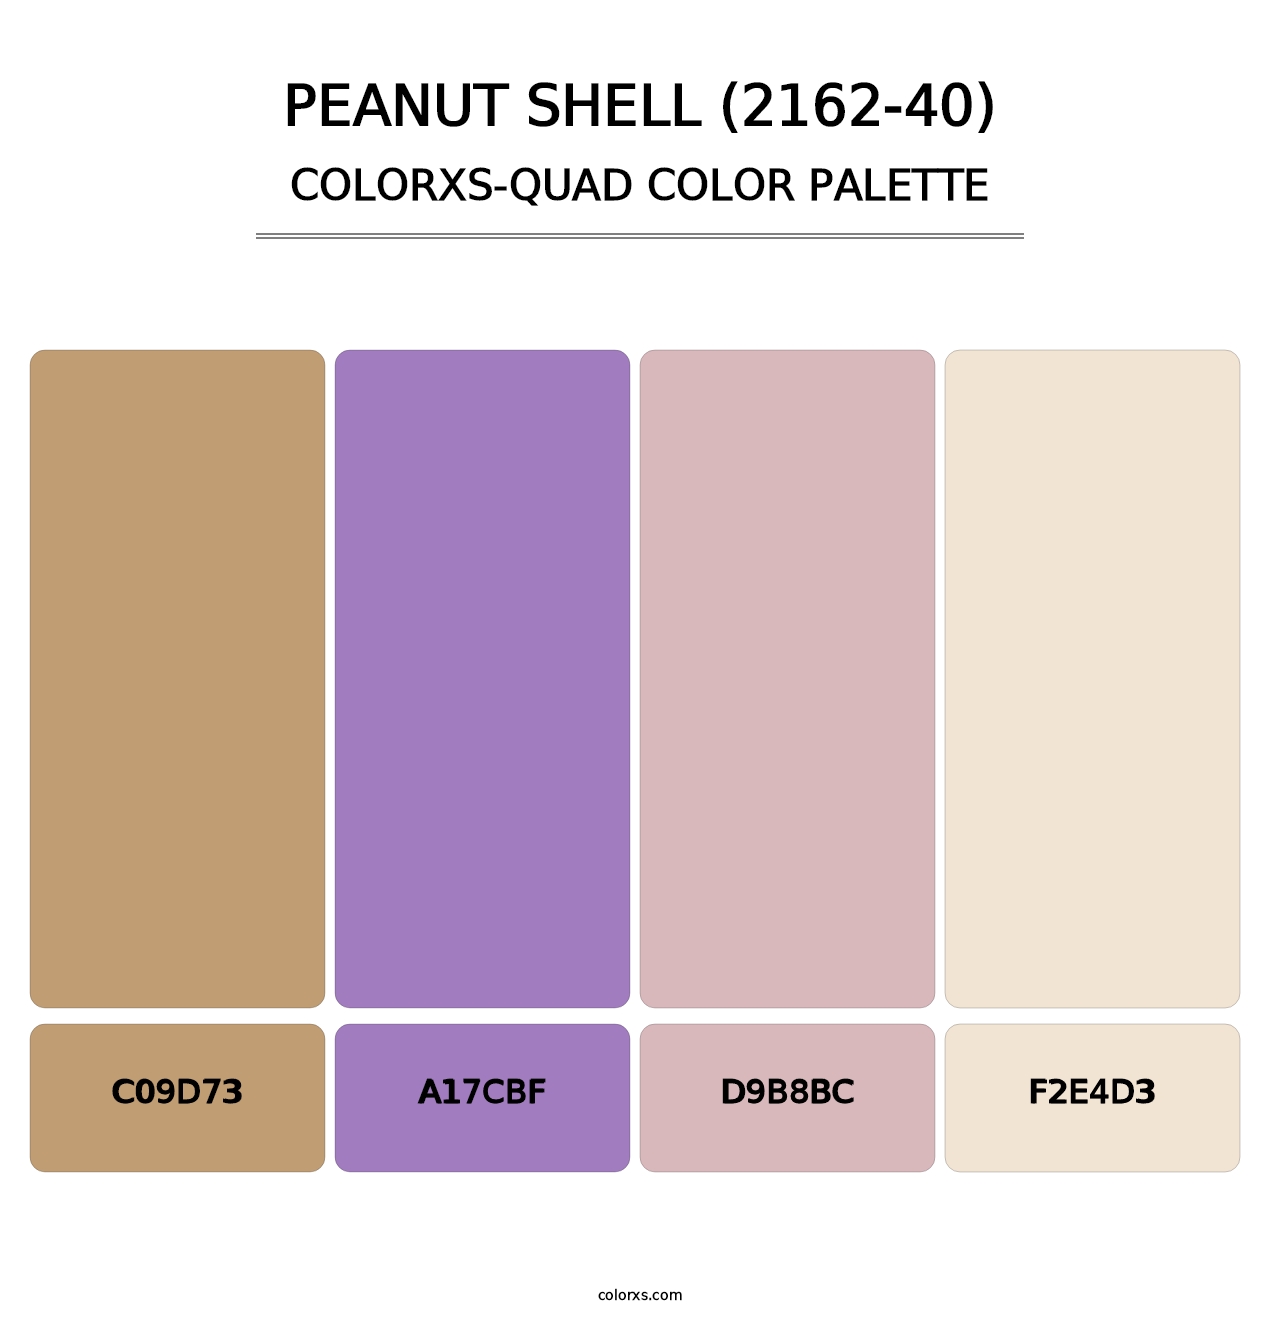 Peanut Shell (2162-40) - Colorxs Quad Palette